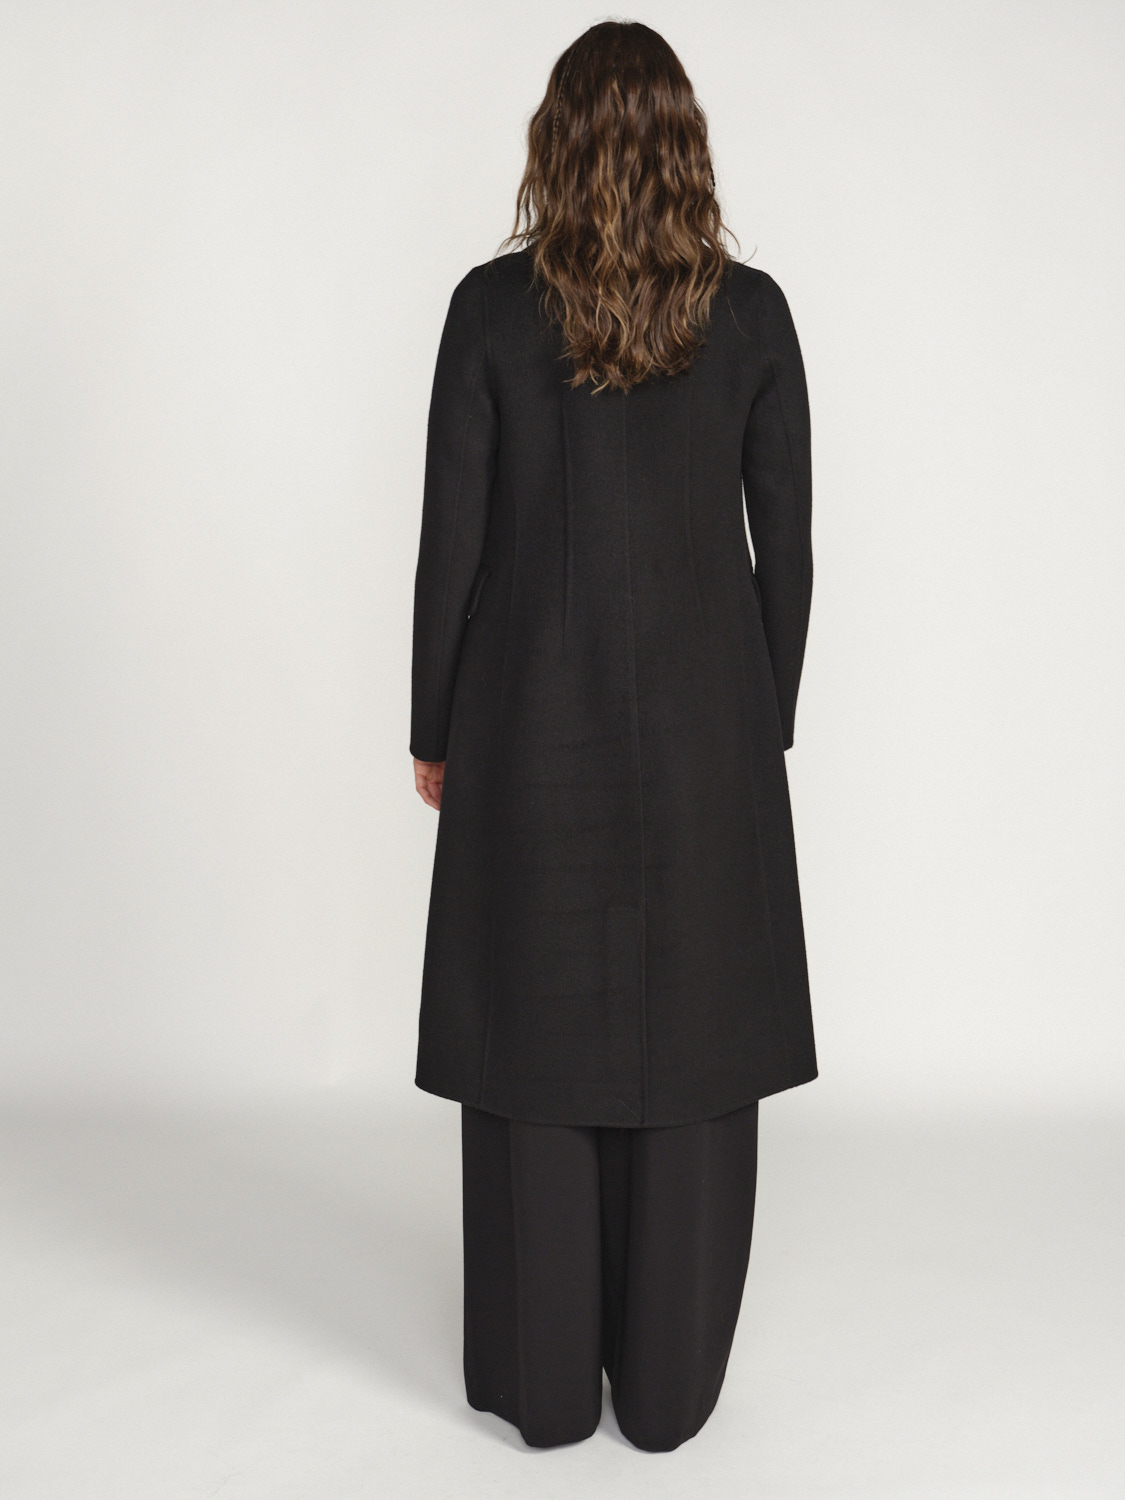 Arma Sao Paulo – Klassischer Mantel mit Knopfleiste aus Wolle schwarz 34